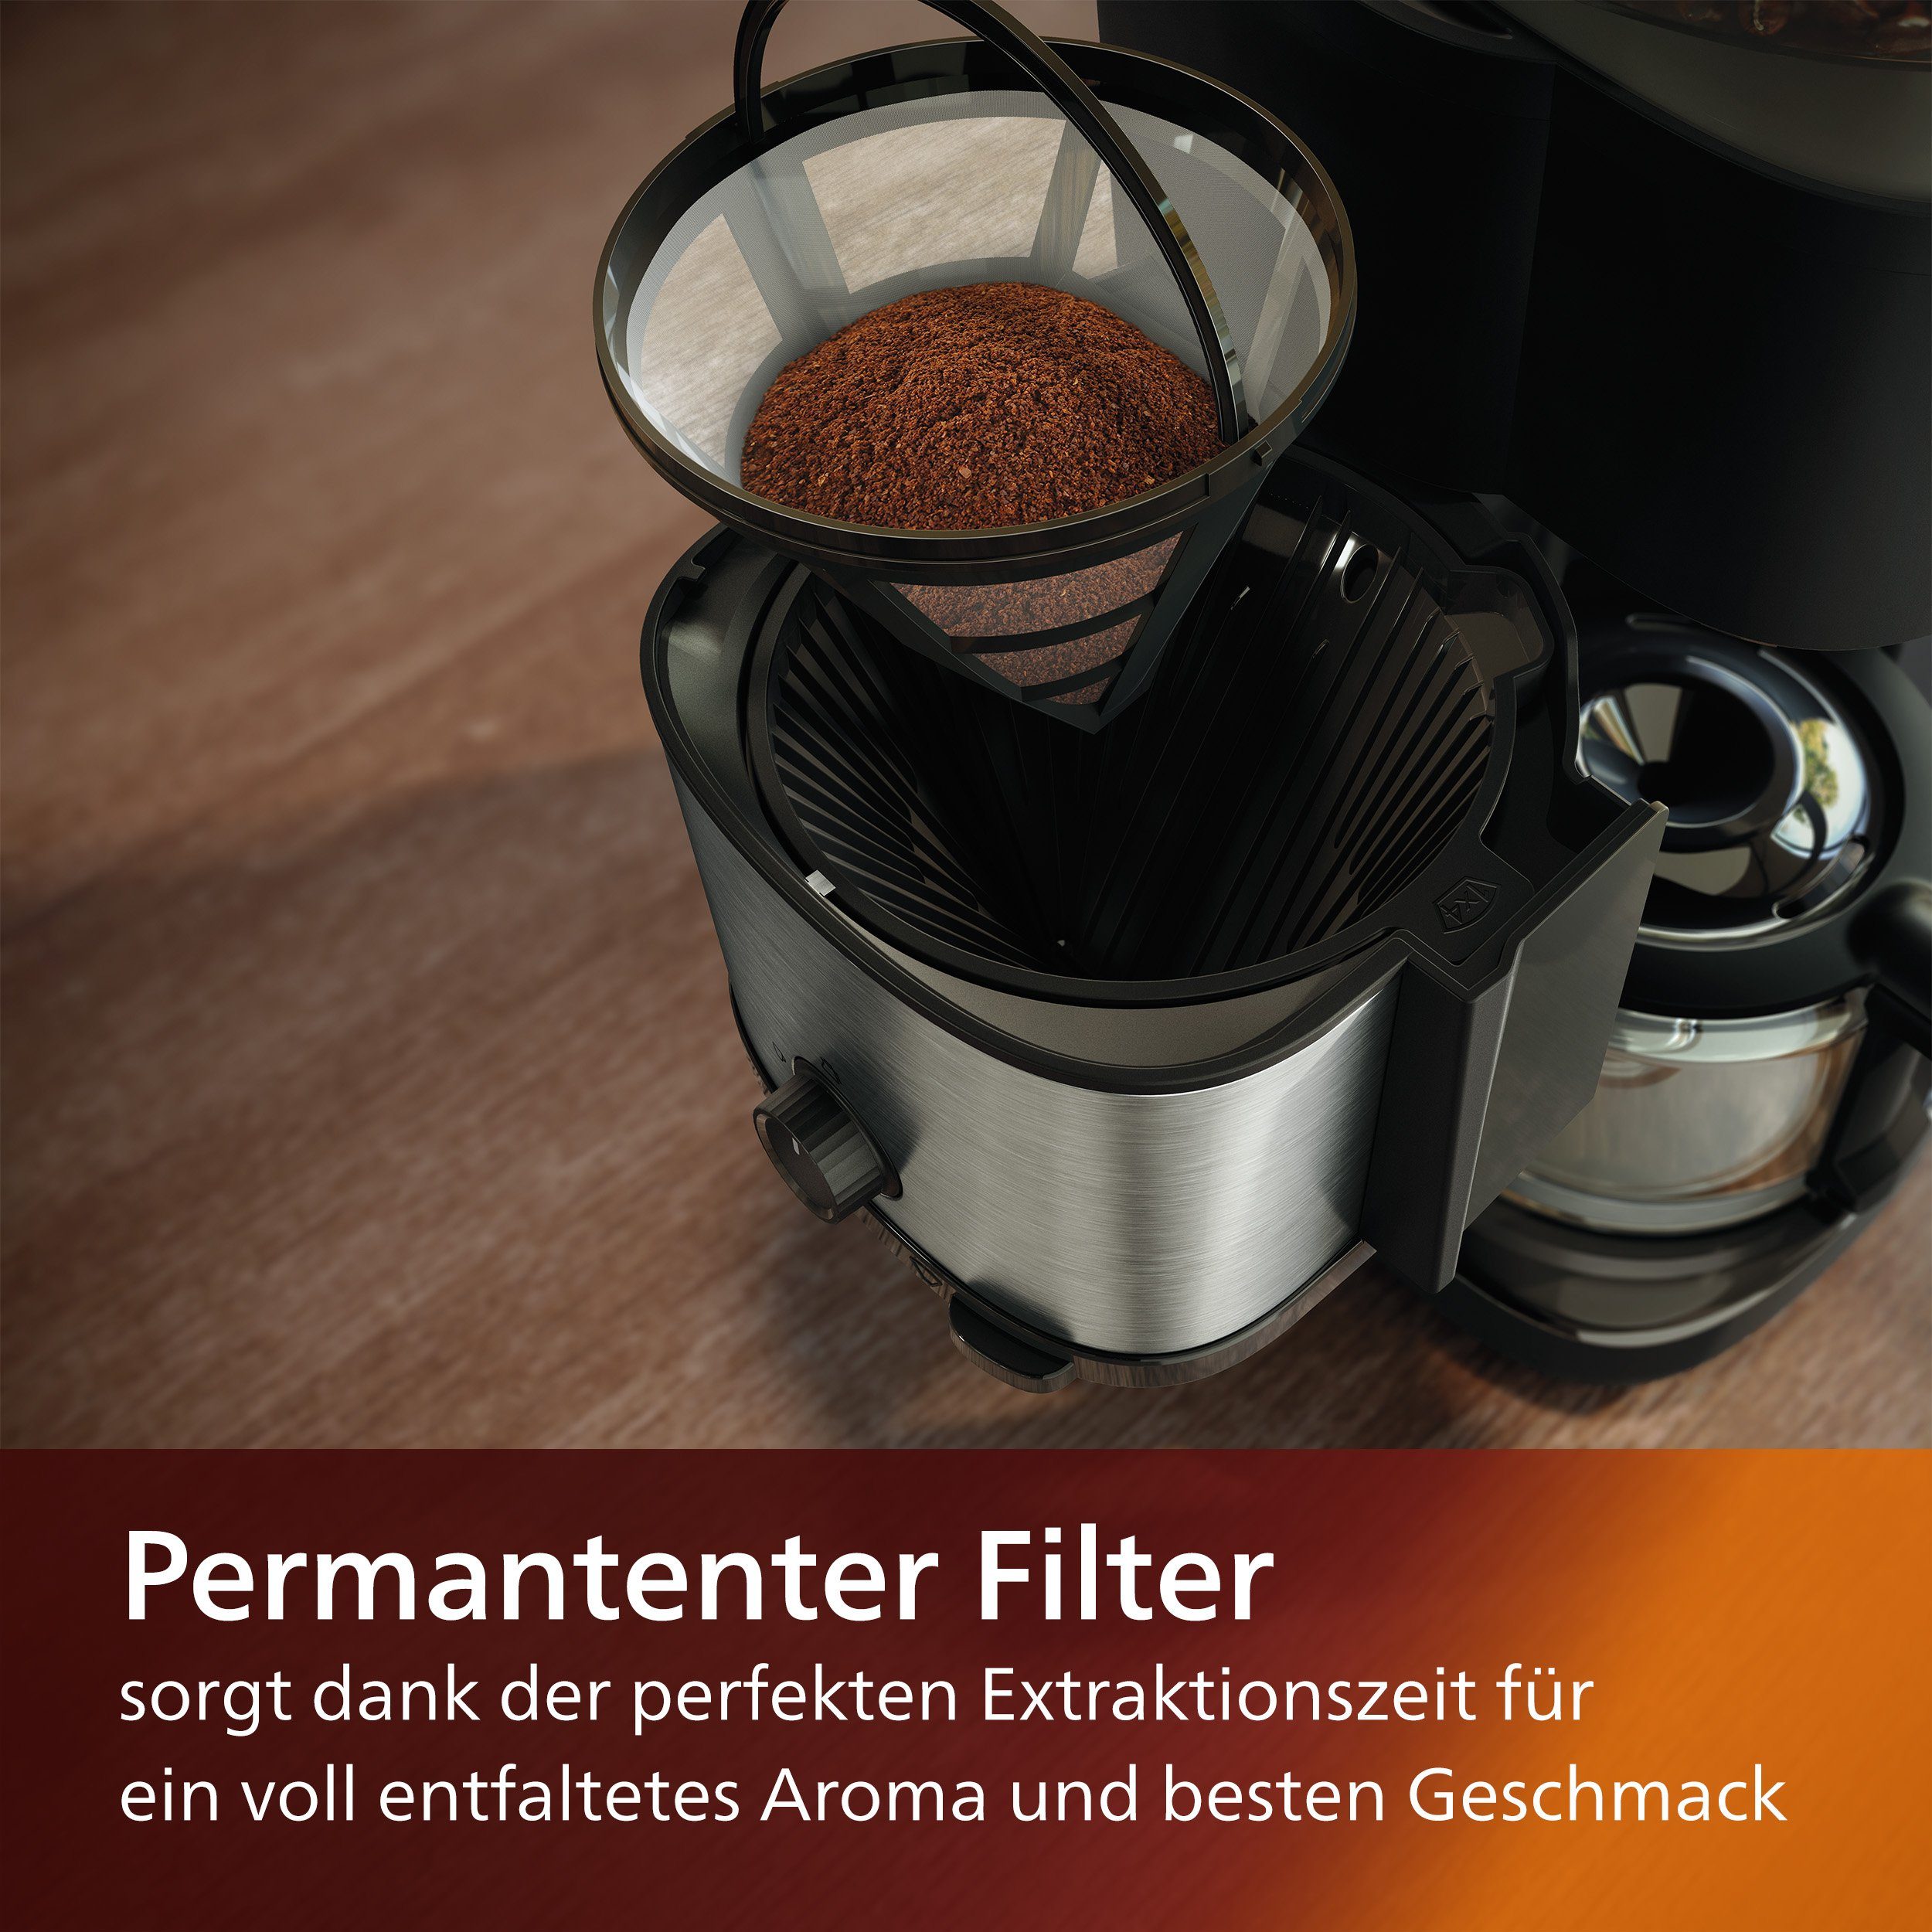 Philips Kaffeemaschine mit All-in-1 inkl. und Dosierung Duo-Kaffeebohnenbehälter, Brew, 1x4, Mahlwerk Smart mit Permanentfilter HD7900/50 Dosierlöffel